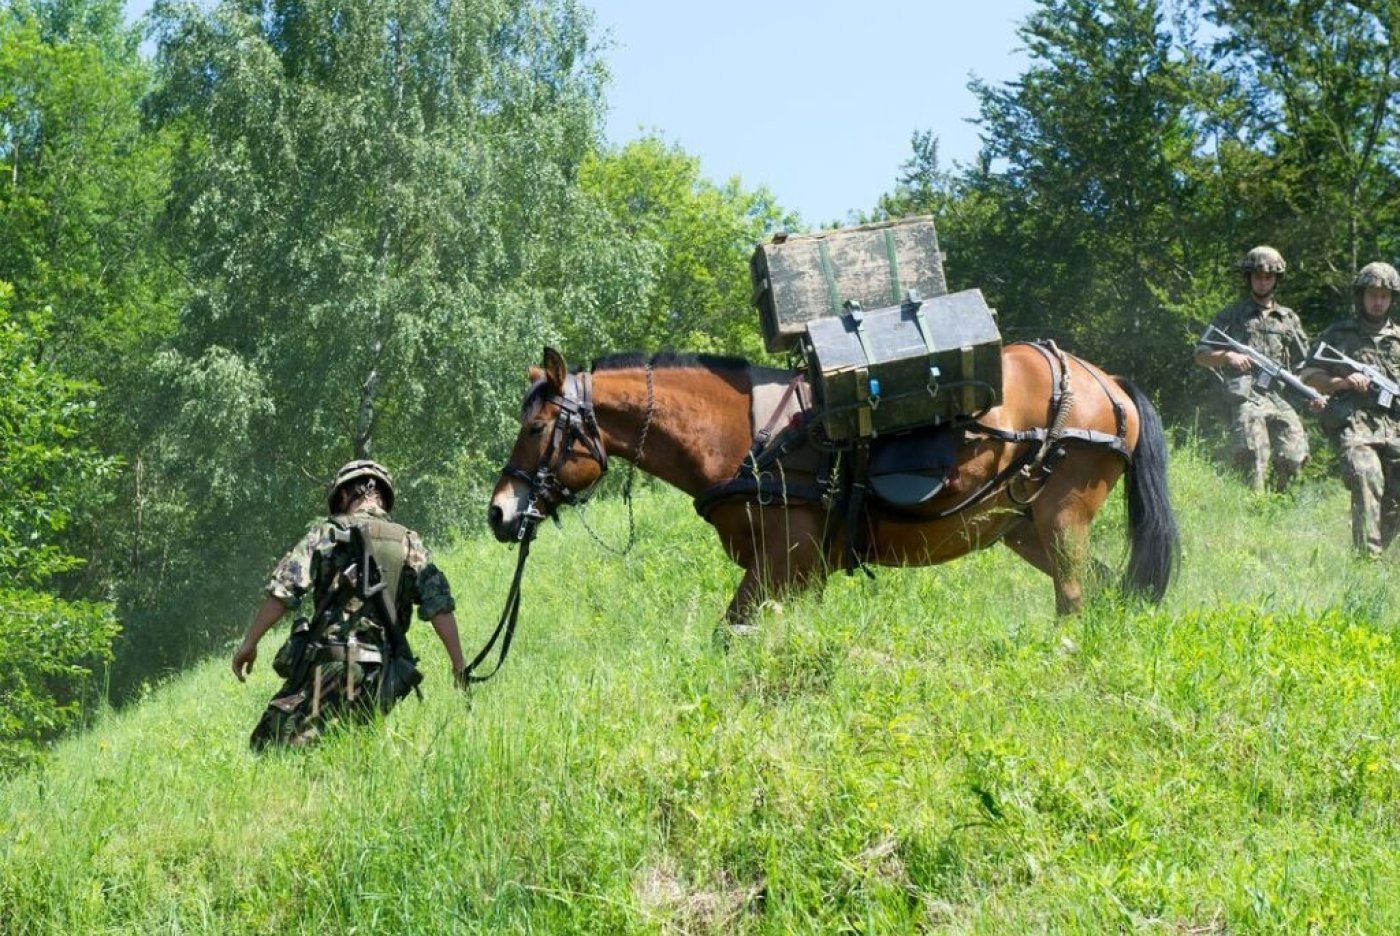 L'armée suisse utilise toujours 300 chevaux. Une exposition à Berne retrace cette longue histoire. KEYSTONE